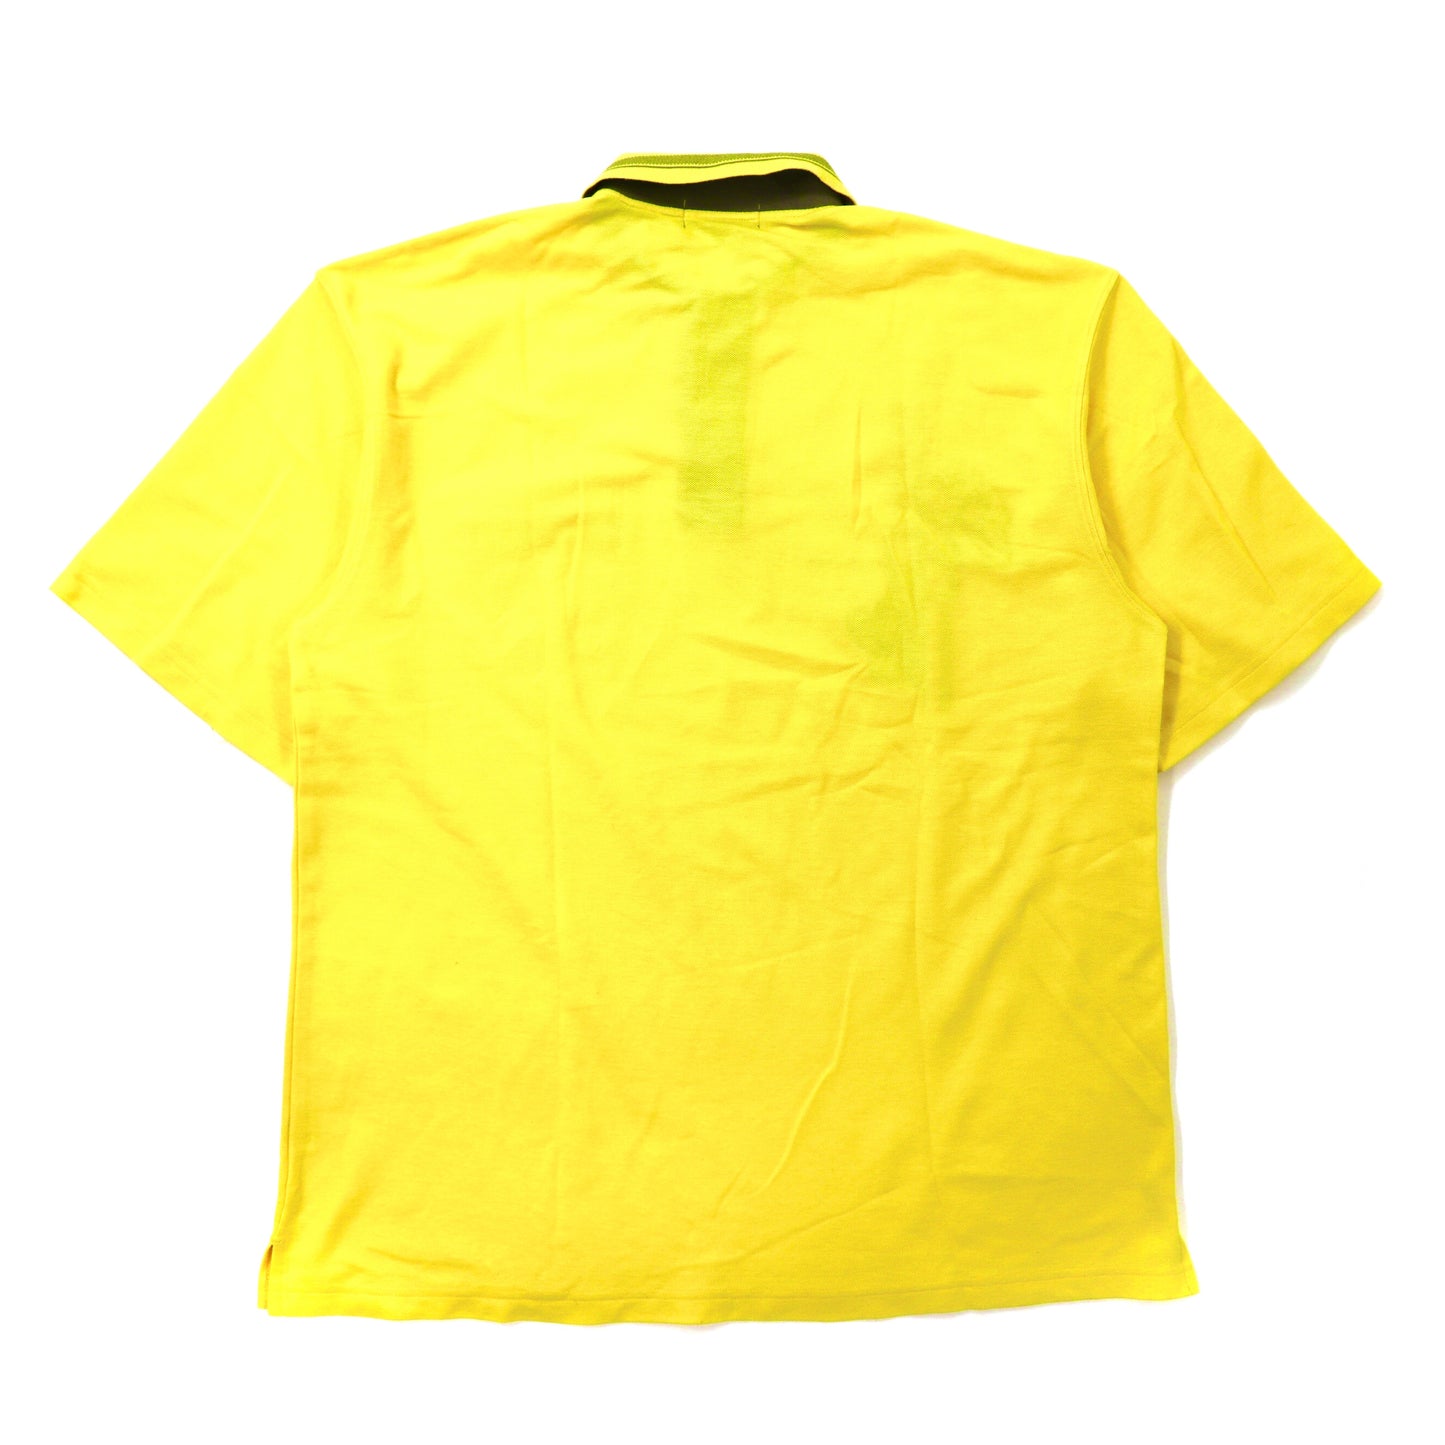 Calro Valentino ビッグサイズ ポロシャツ 5L イエロー コットン 犬 キャラクター刺繍